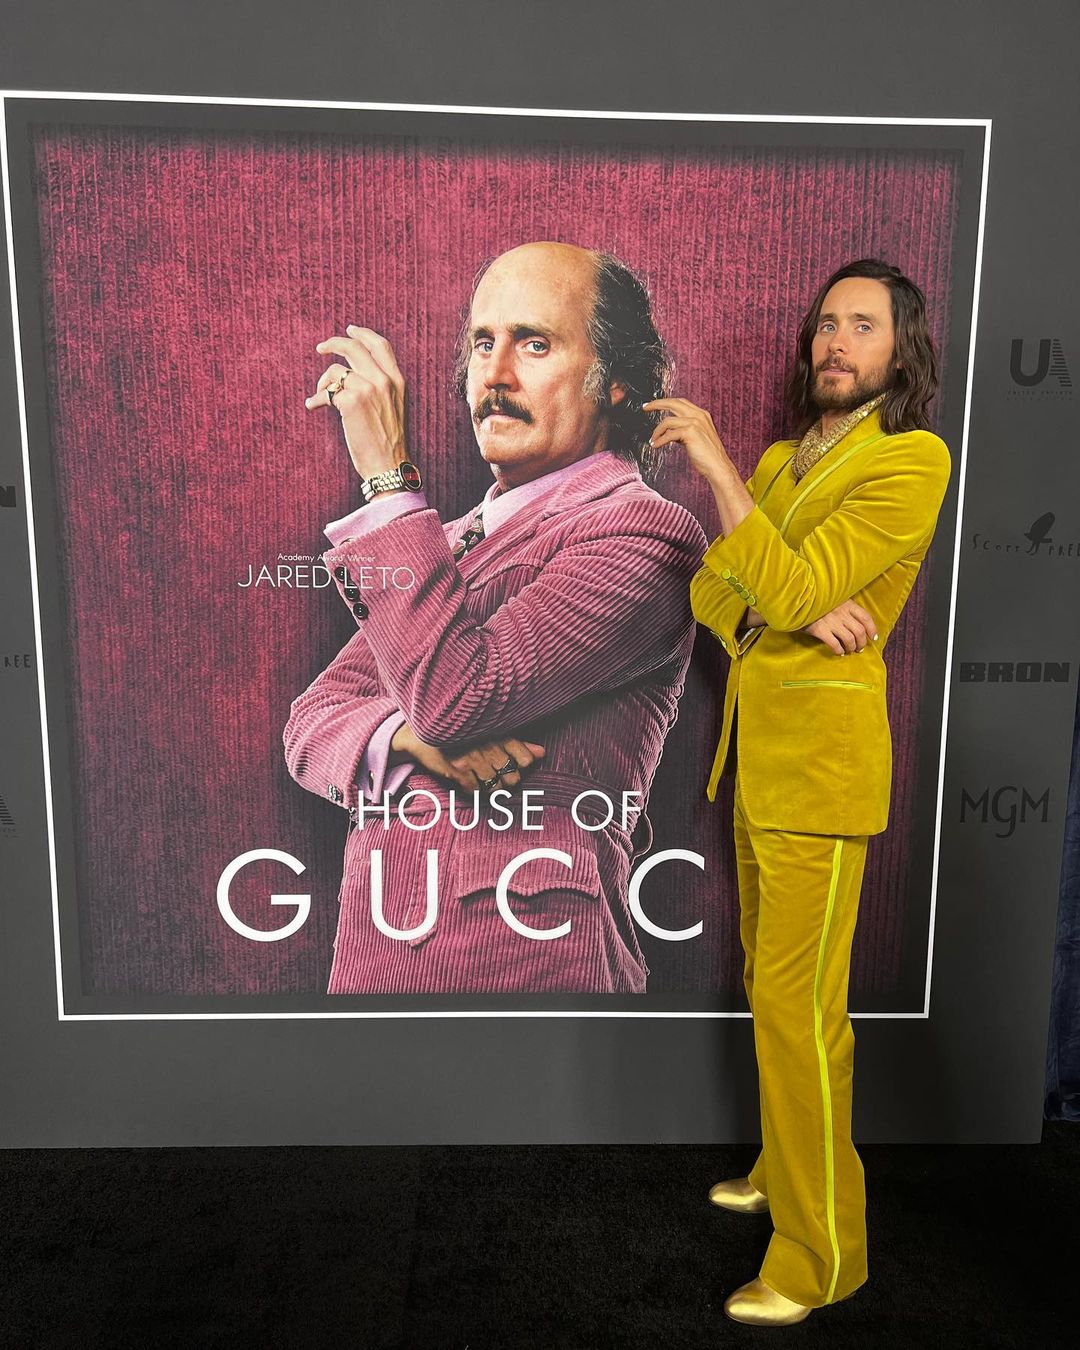 Trong “House of Gucci”, Jared Leto tiếp tục rũ bỏ hình ảnh quyến rũ, thời thượng đời thường để hóa thân thành người đàn ông trung niên hói đầu với lối ăn mặc sặc sỡ.